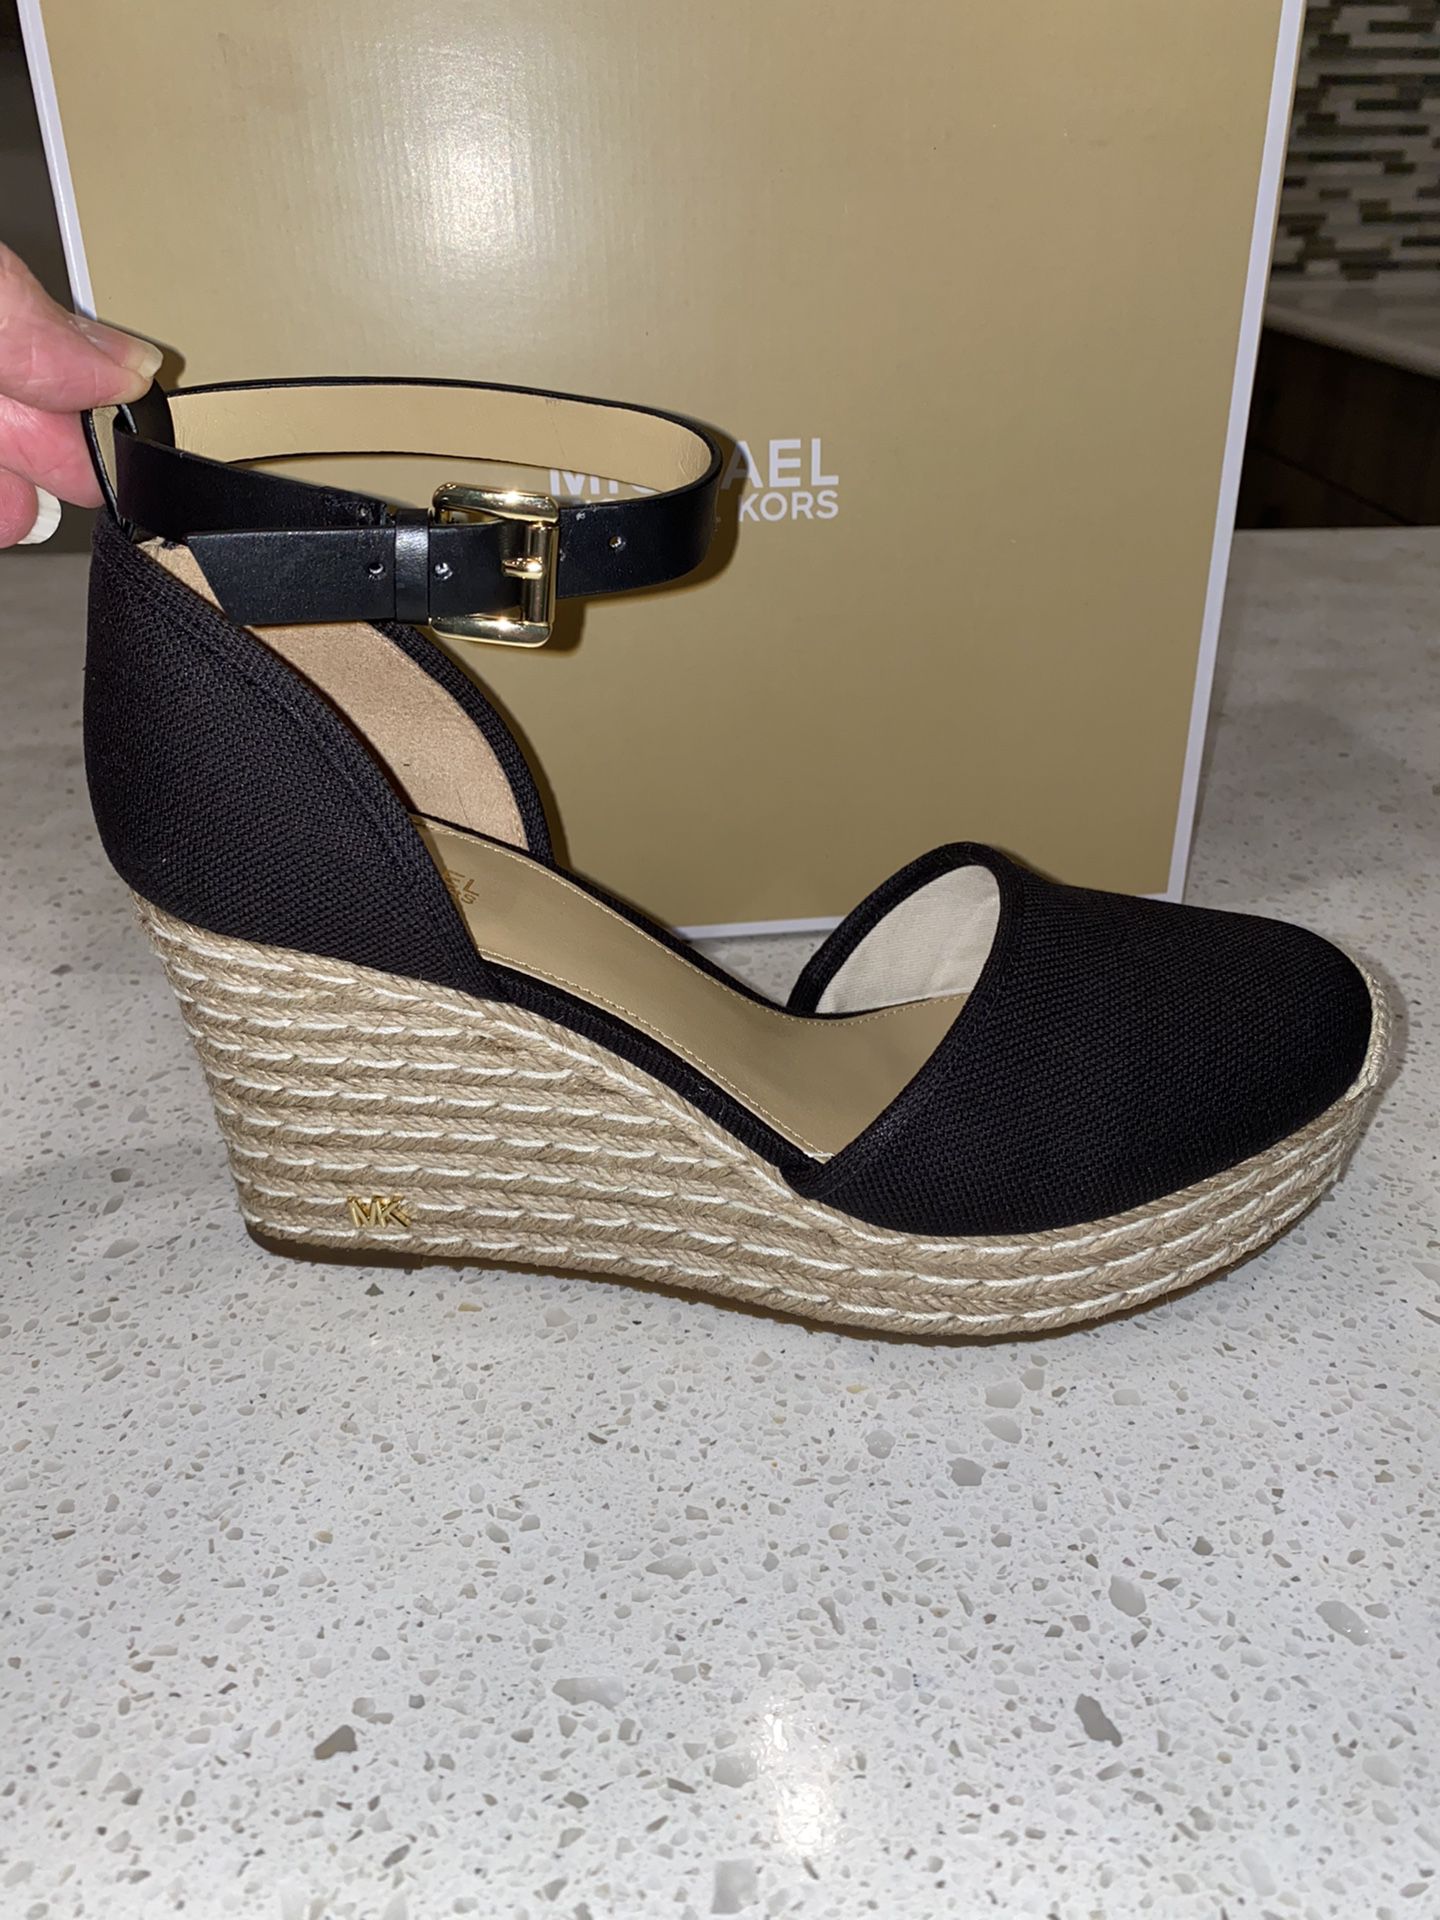 Women’s Size 8 1/2 Michael Kors Shoes